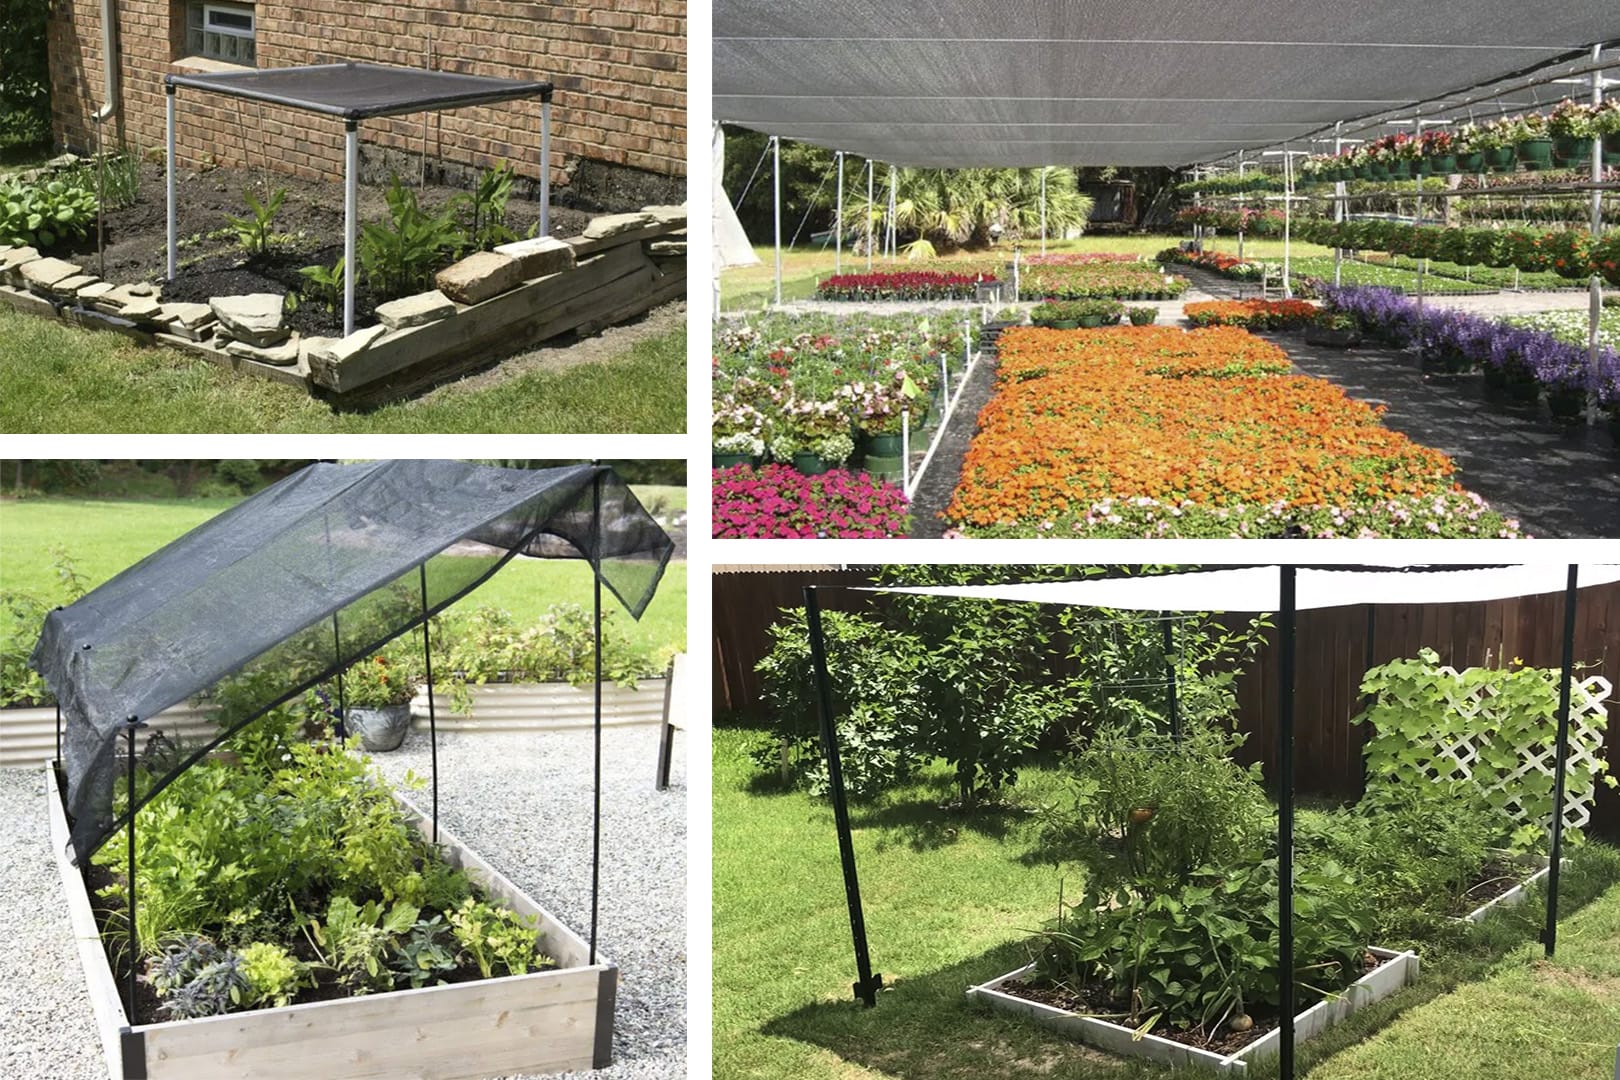 8 DIY Garden Shade Ideas to enhance your backyard space